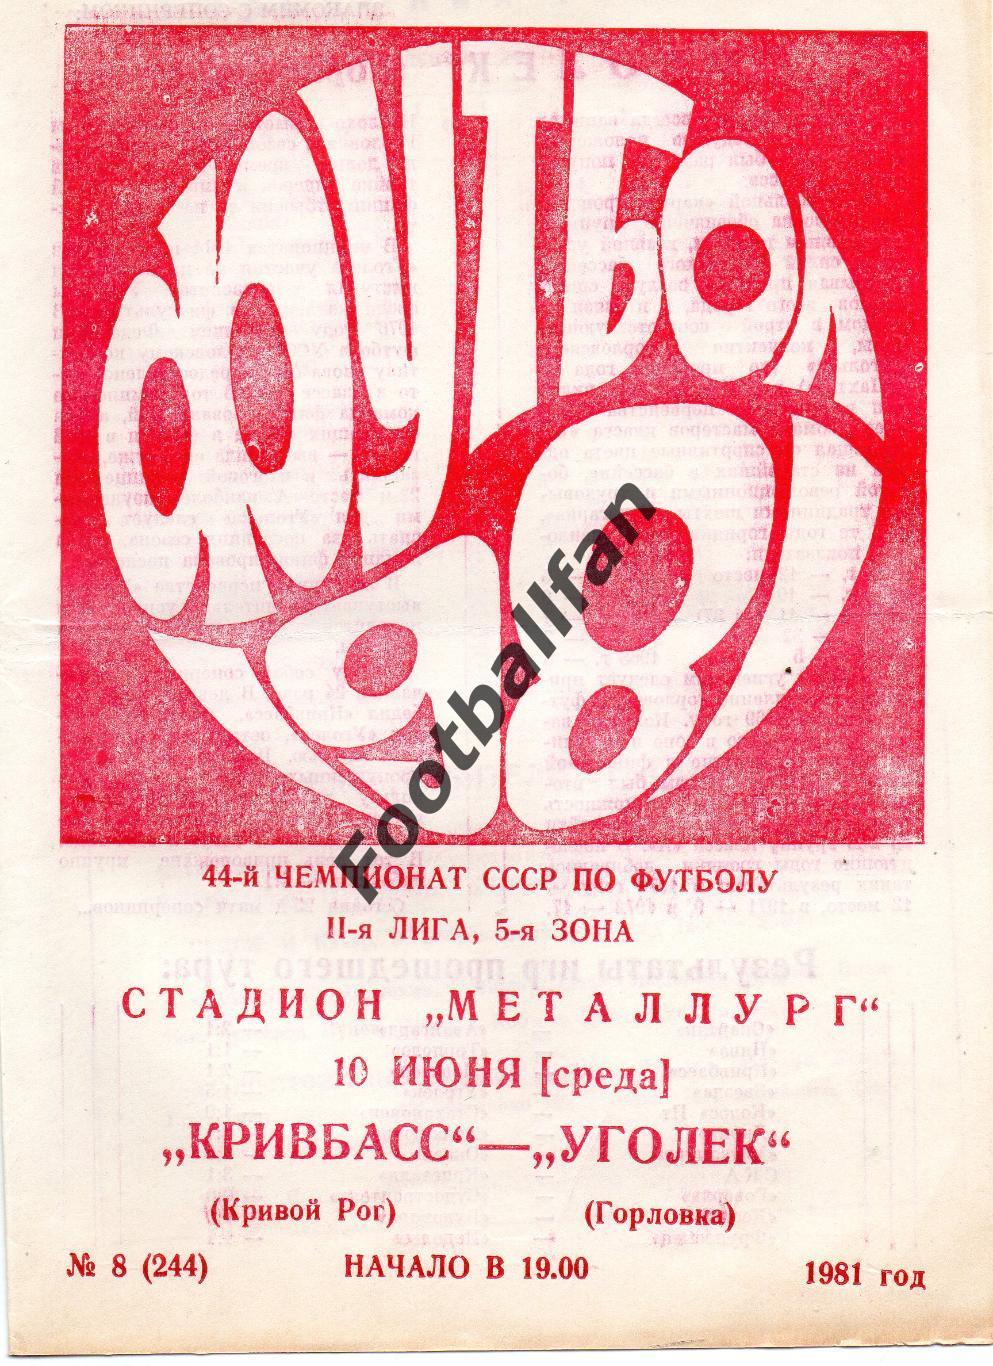 Кривбасс Кривой Рог - Уголек Горловка 10.06.1981